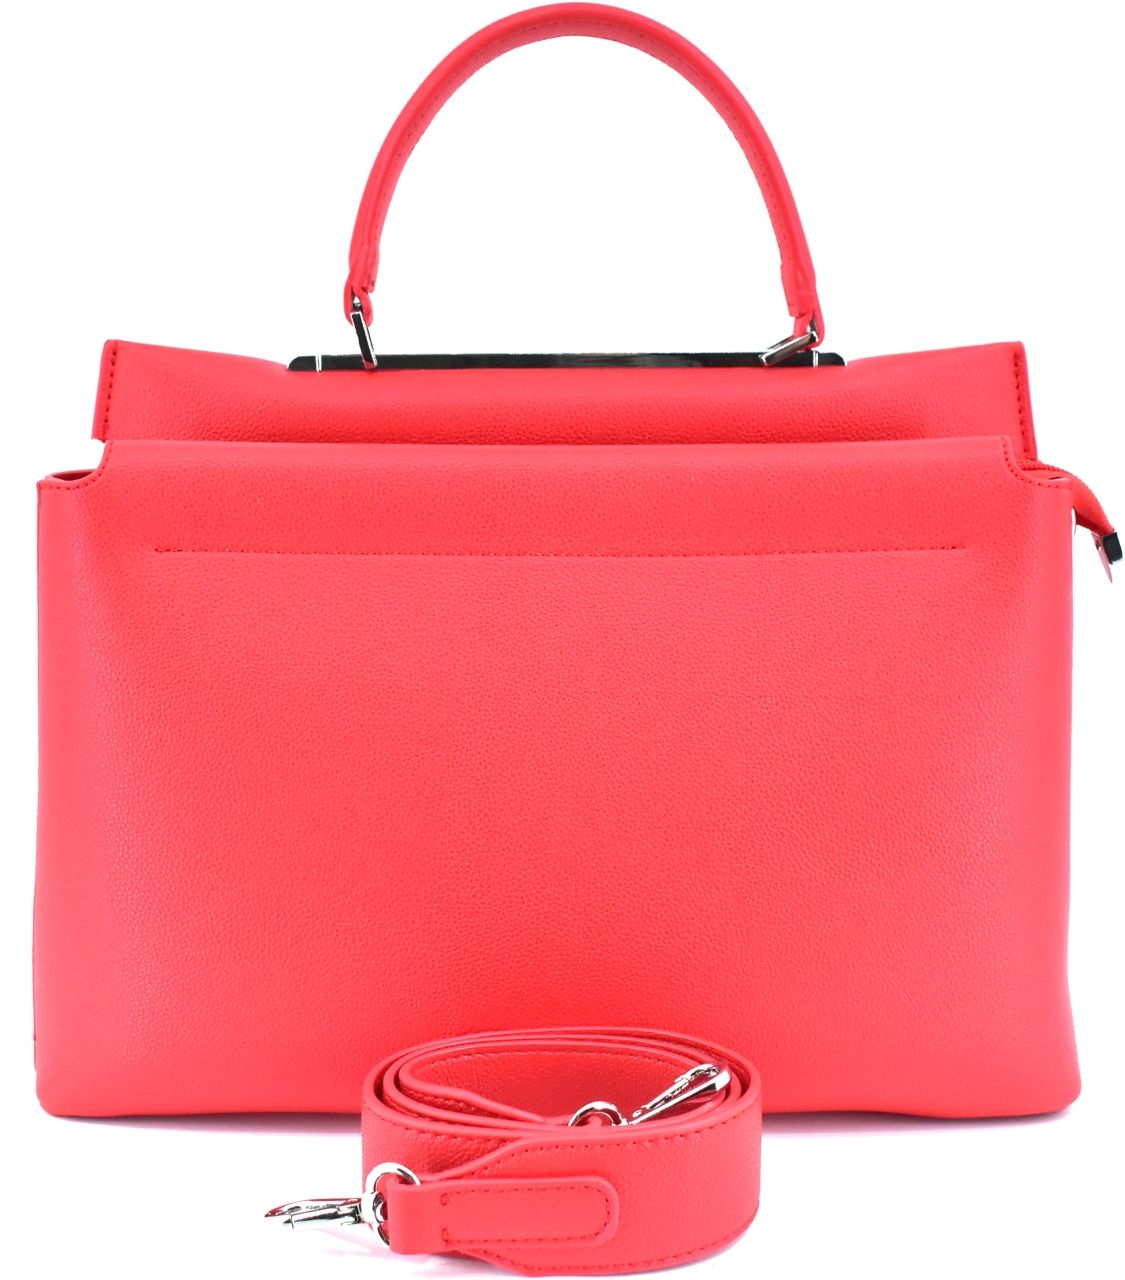 Moderní dámská kabelka shopper - červená 41377